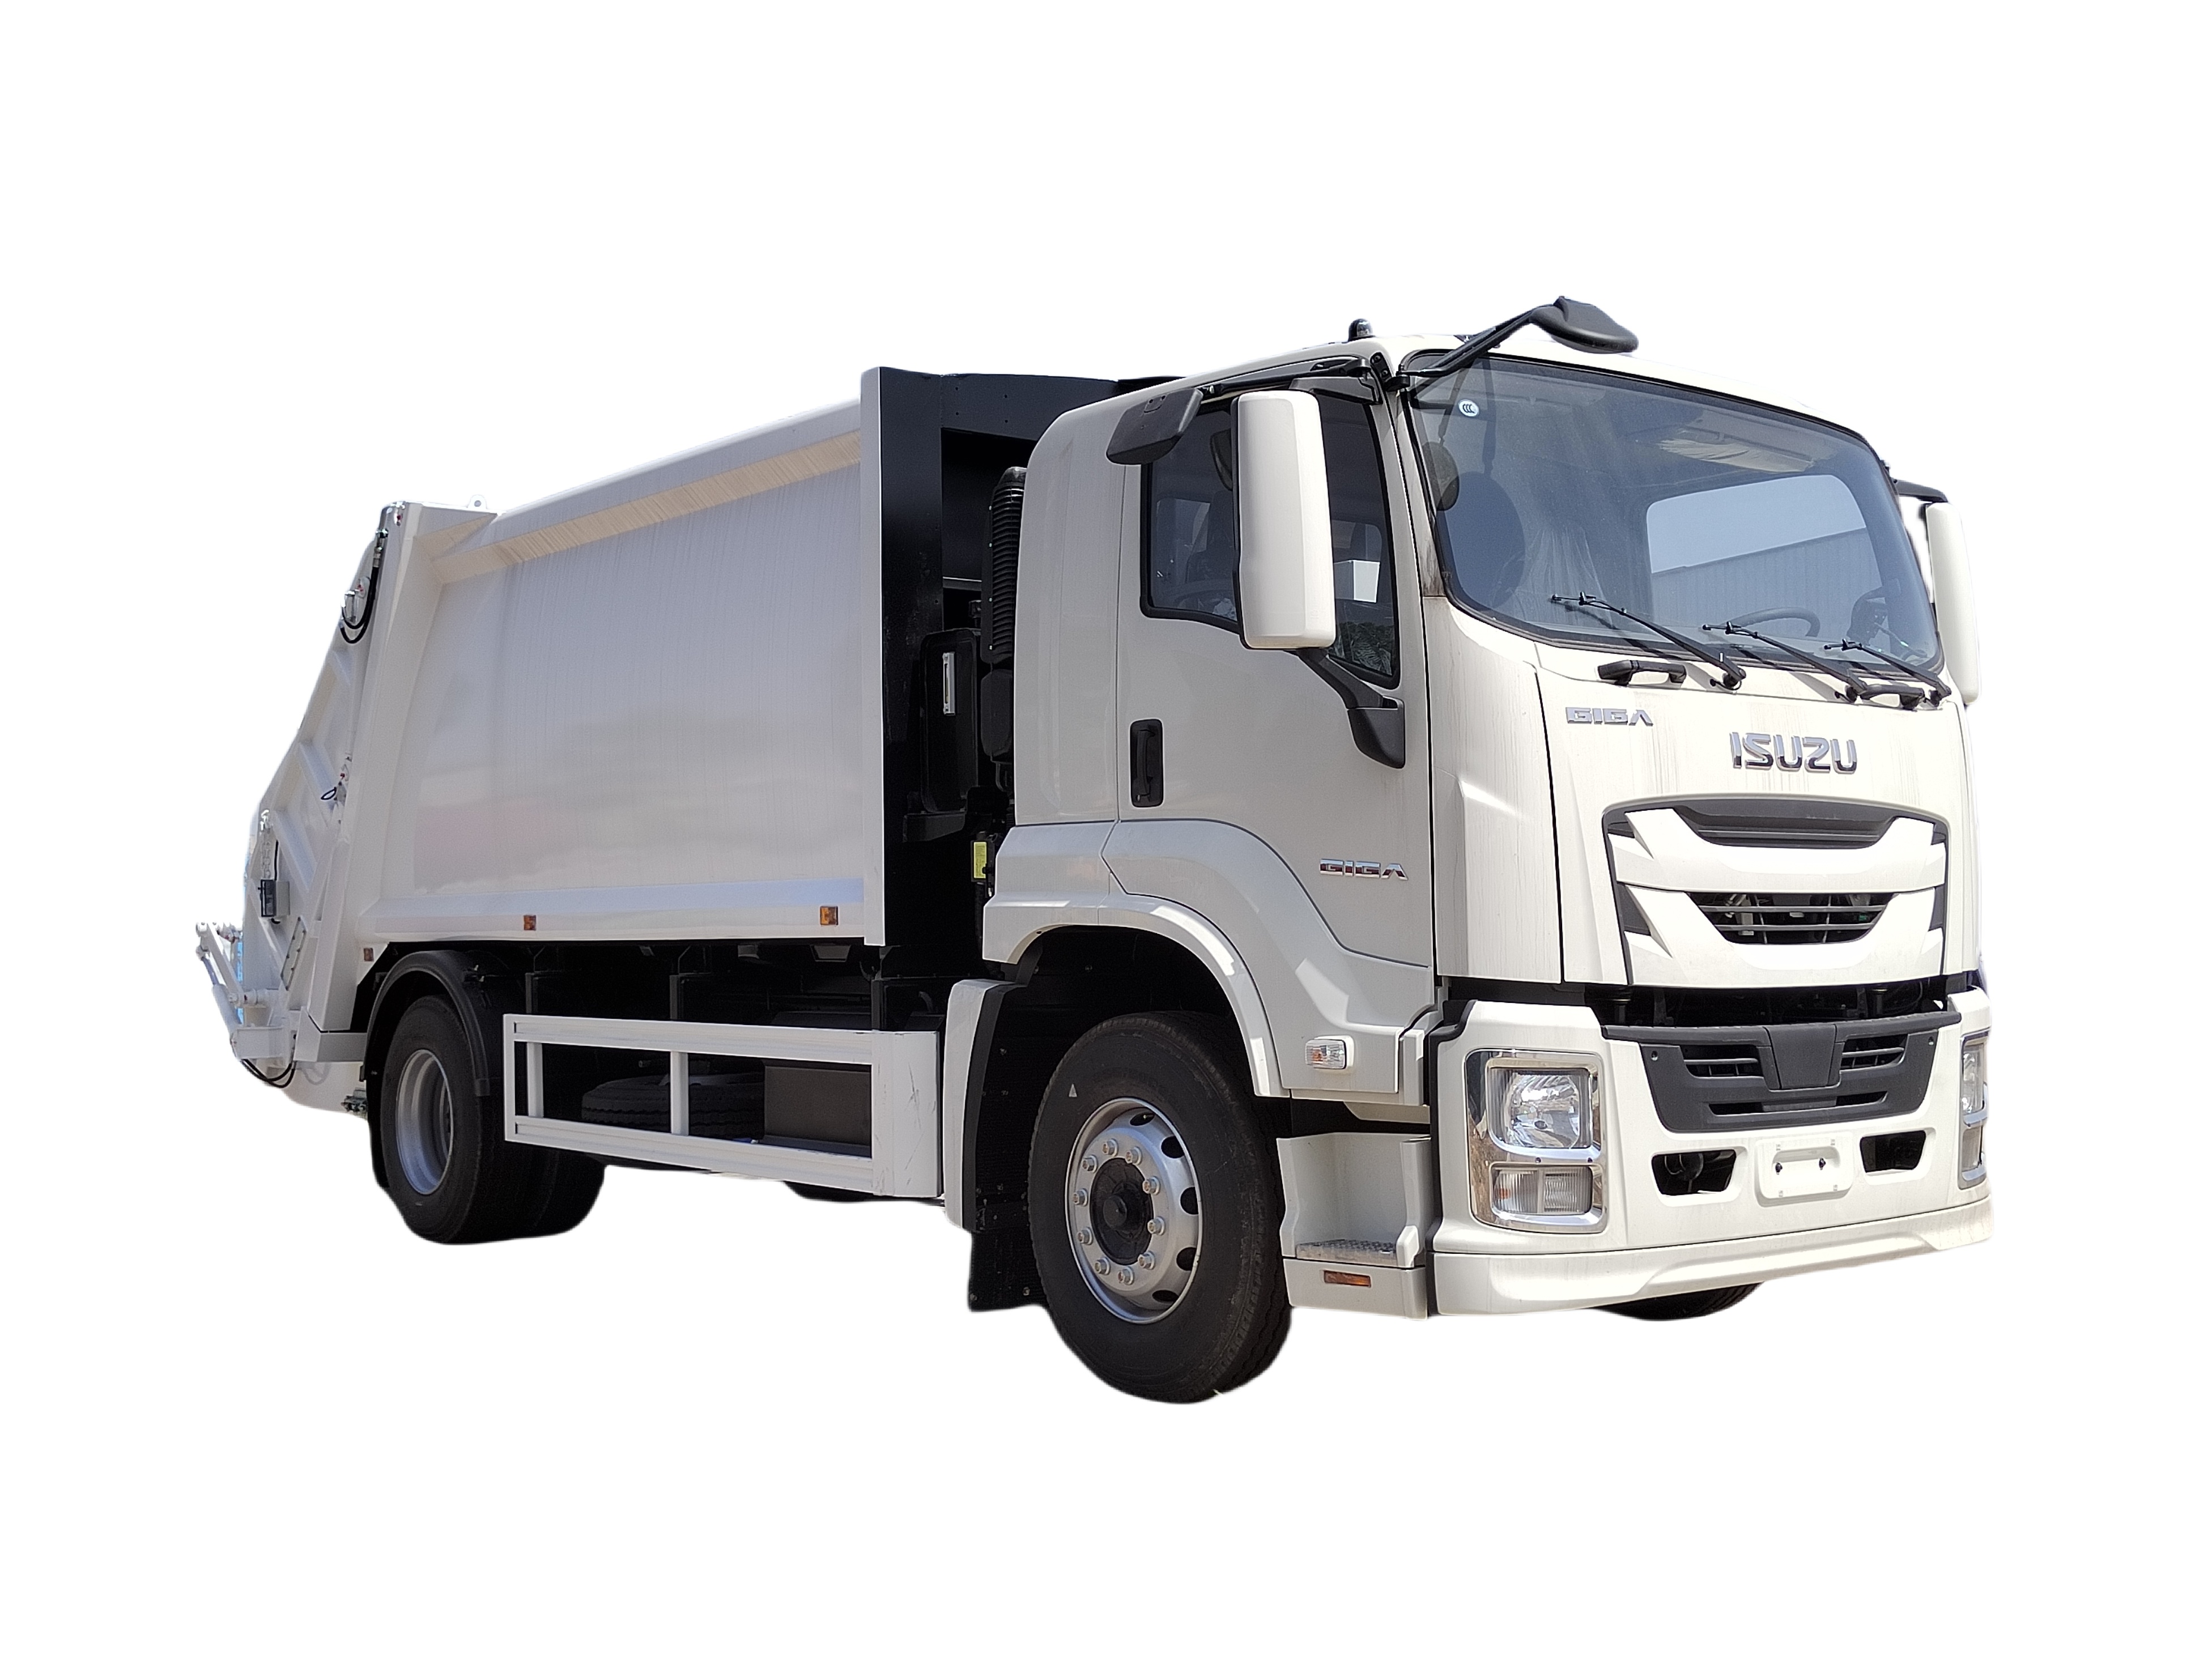 GIGA Isuzu Waste Garbage Compactor Truck